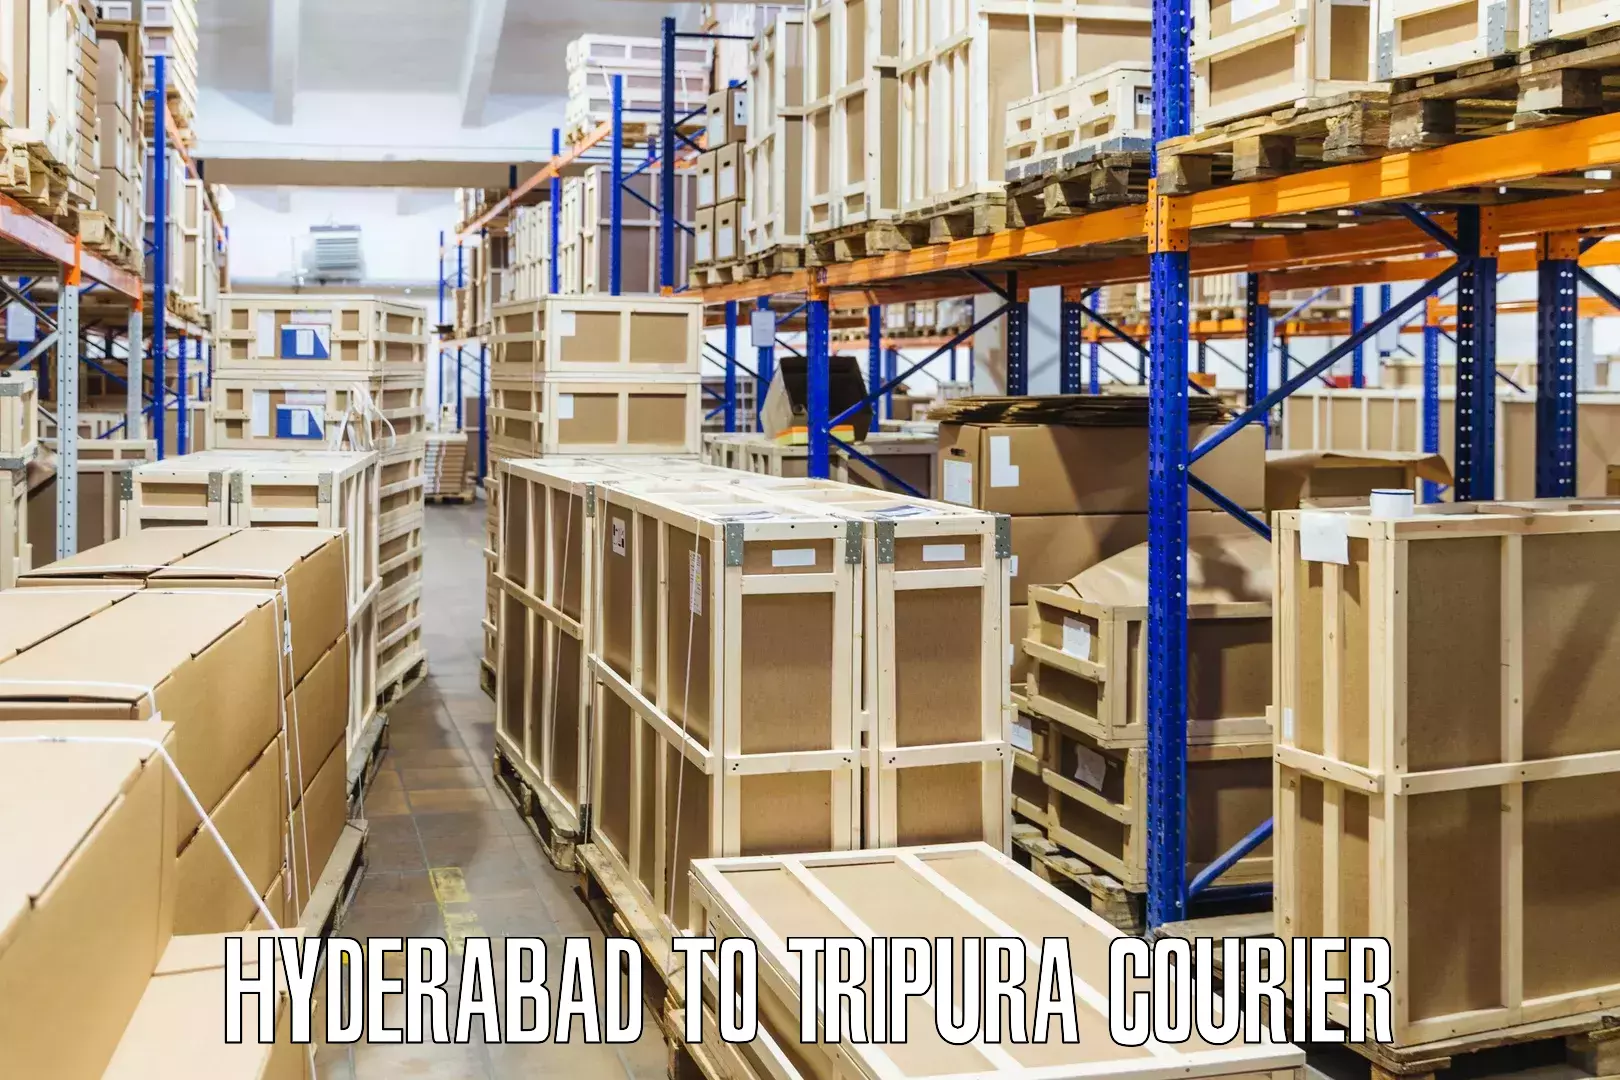 Trackable shipping service Hyderabad to IIIT Agartala